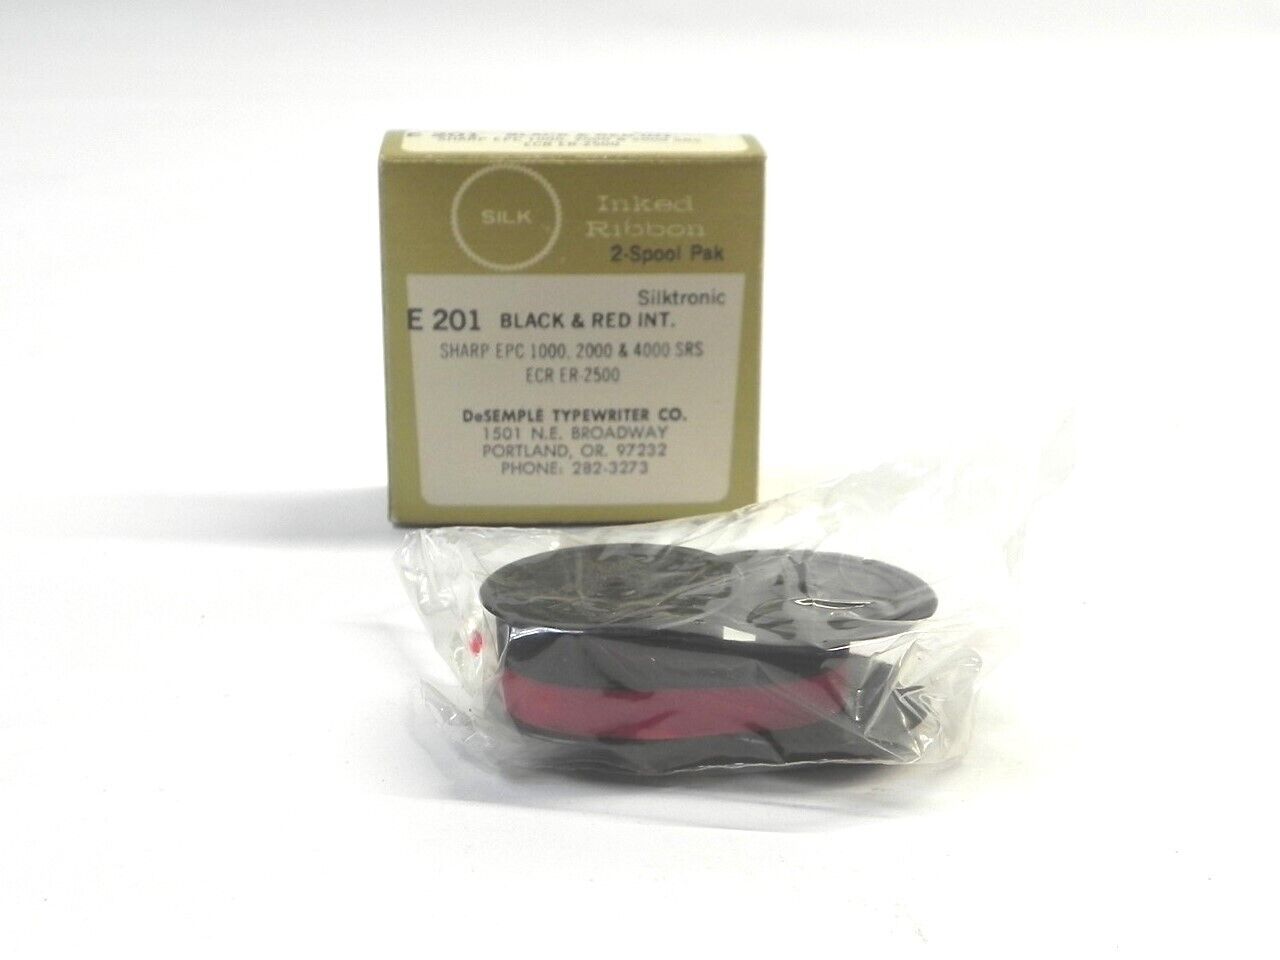 VINTAGE SILK E-201 TYPEWRITER RIBBON 2-SPOOL PAK SILKTRONIC RED & BLACK INK NEW